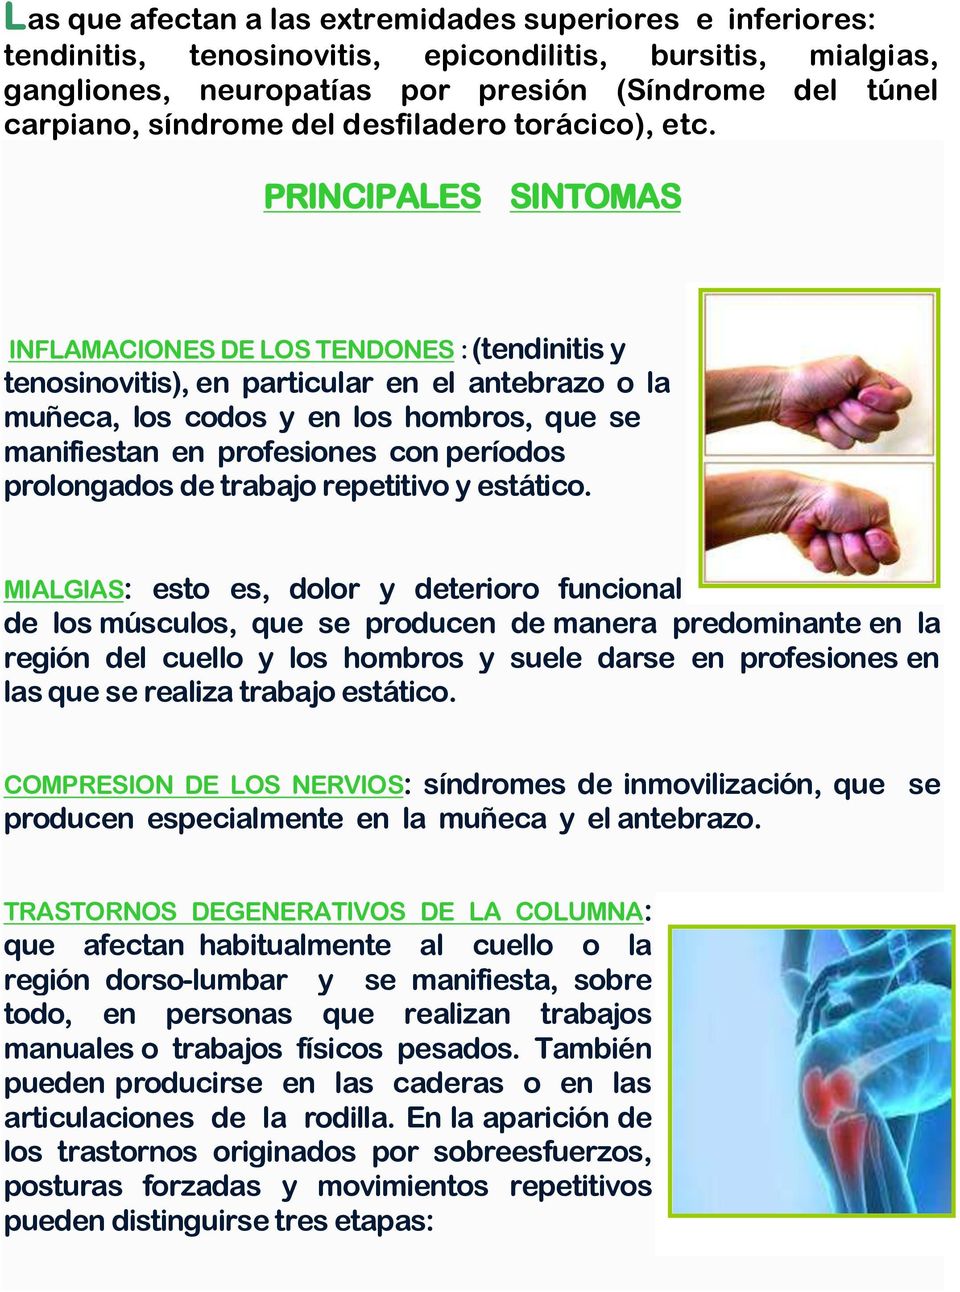 PRINCIPALES SINTOMAS INFLAMACIONES DE LOS TENDONES : (tendinitis y tenosinovitis), en particular en el antebrazo o la muñeca, los codos y en los hombros, que se manifiestan en profesiones con